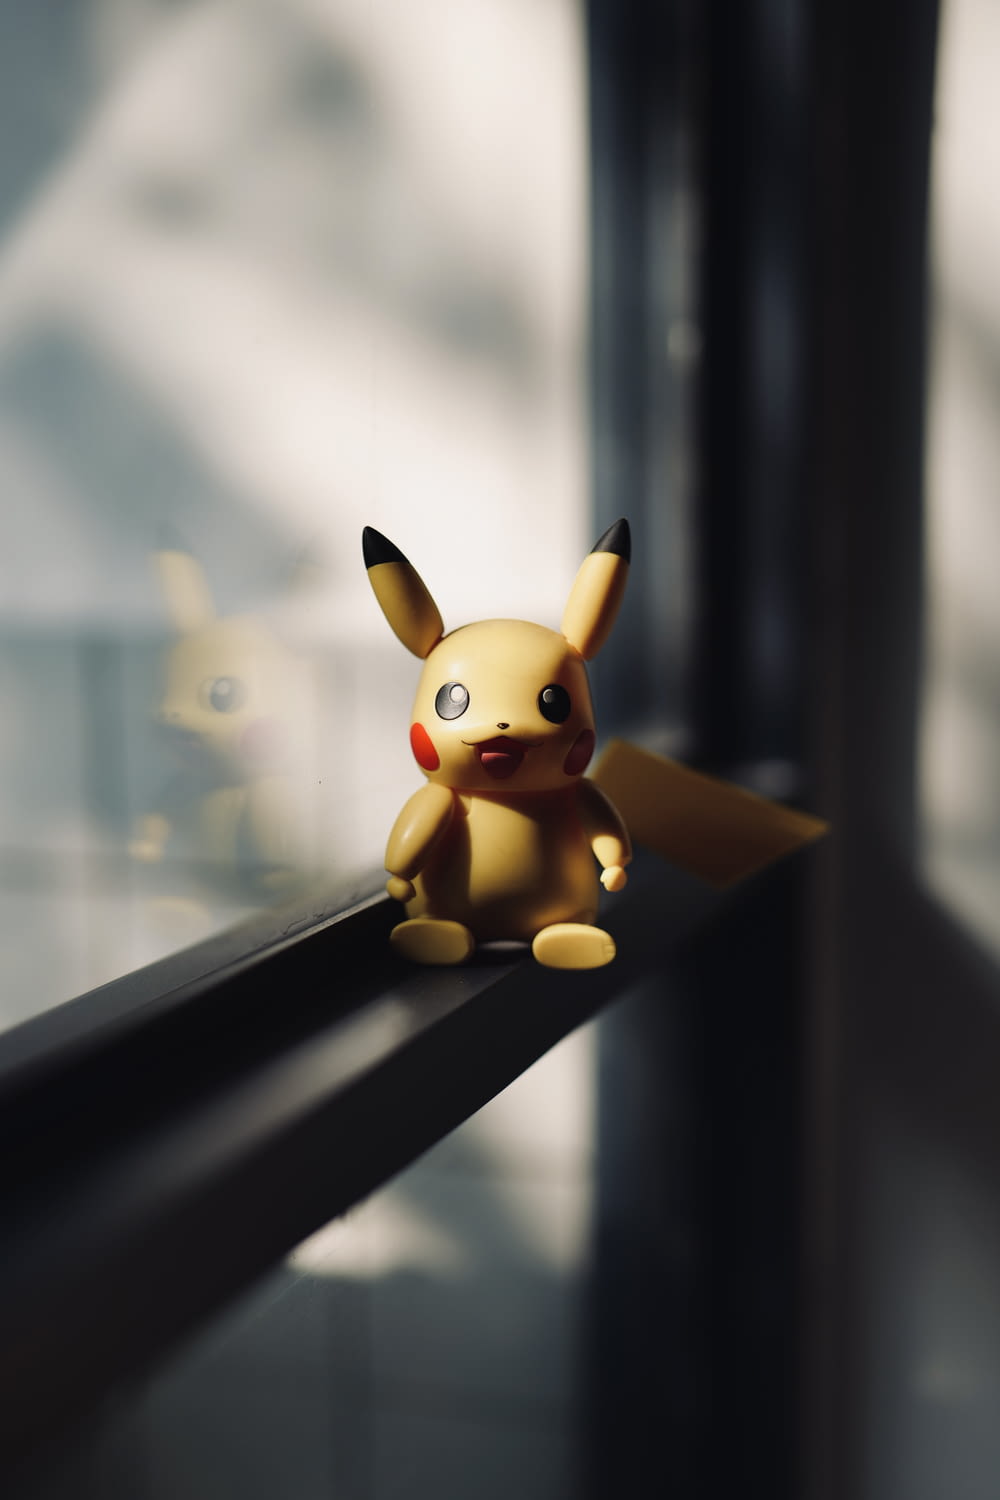 Un Pikachu jouet assis sur le rebord d’une fenêtre